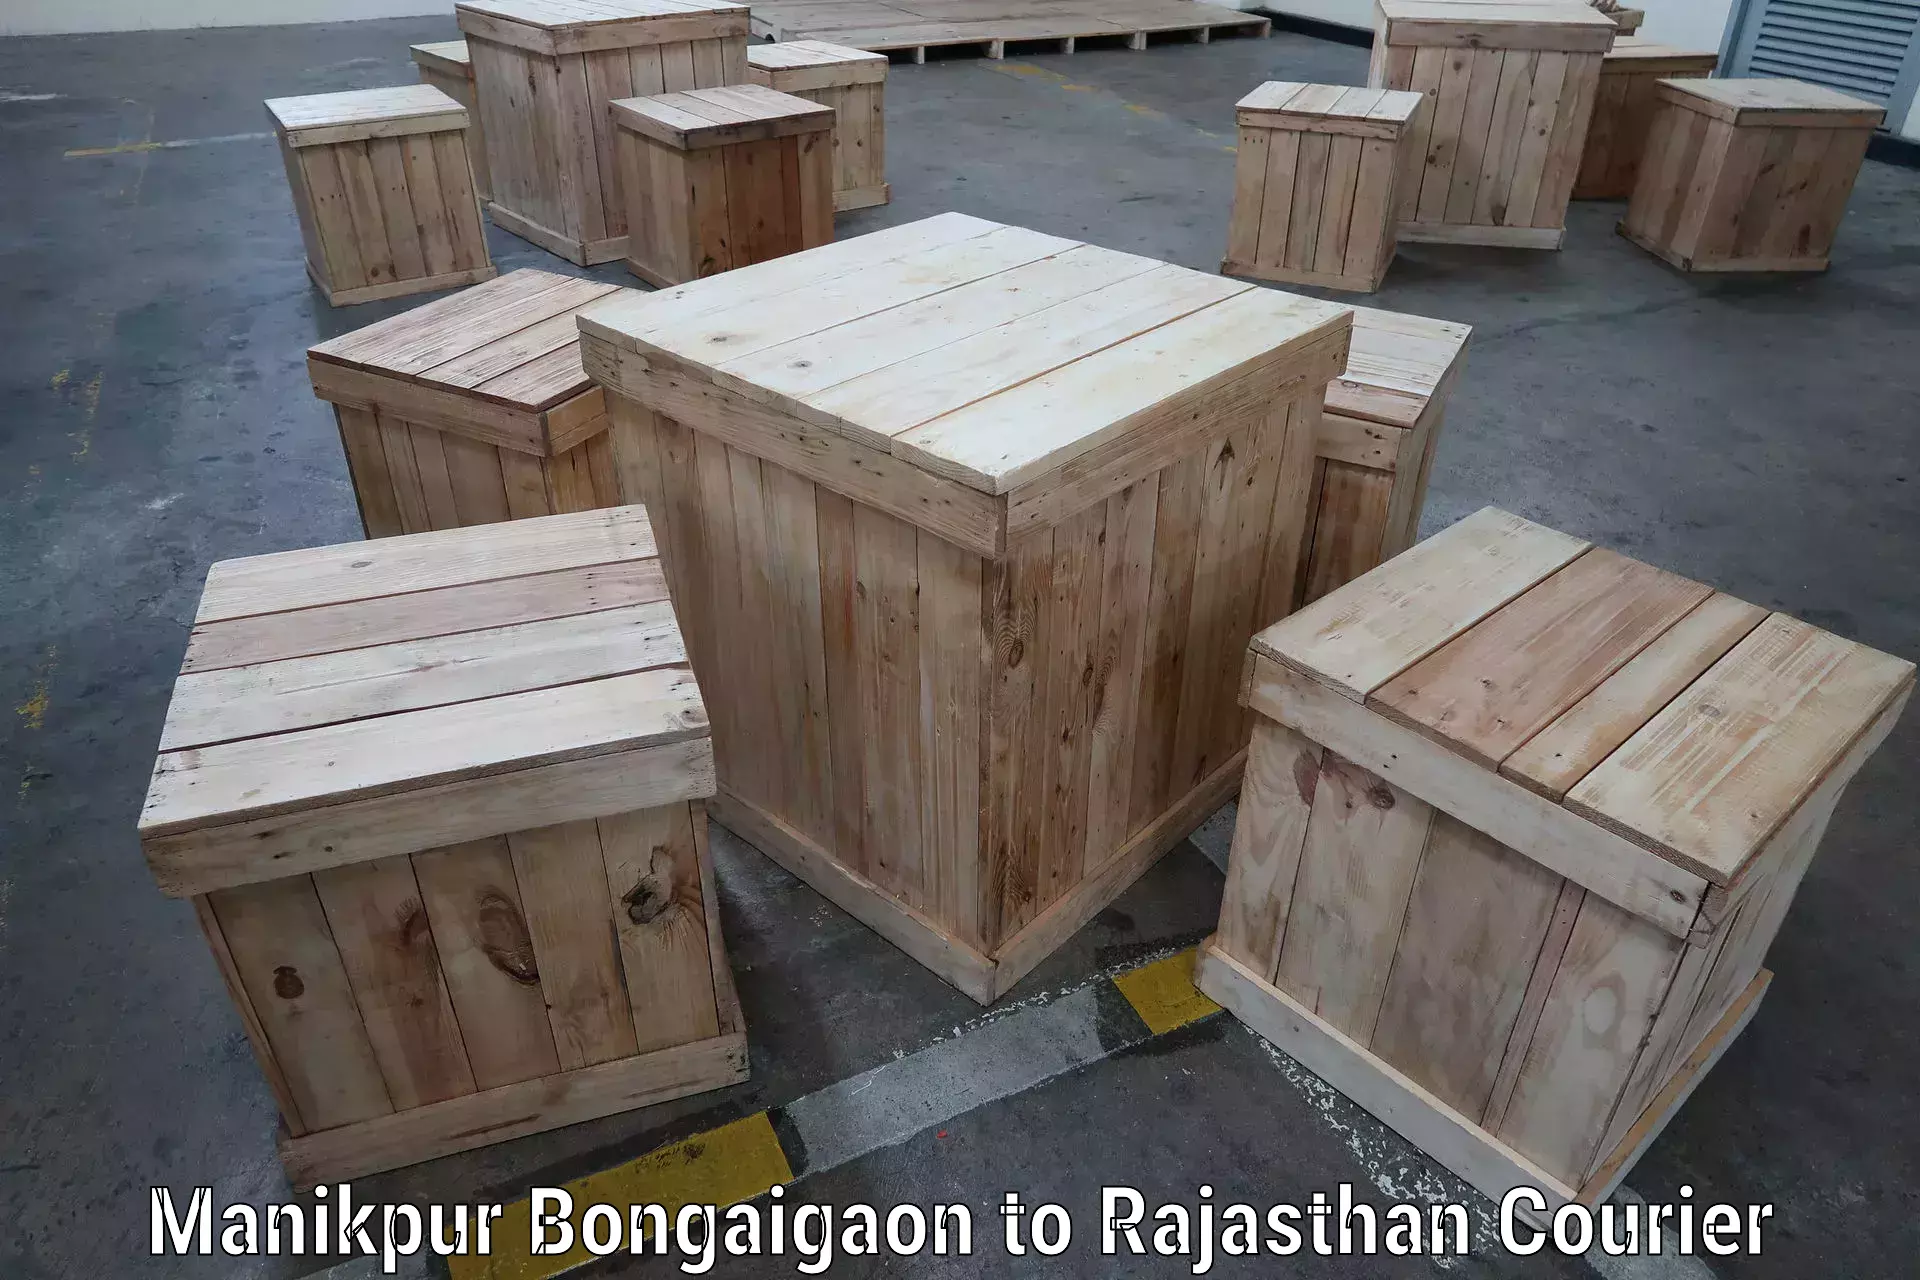 Innovative shipping solutions Manikpur Bongaigaon to Dhariyawad